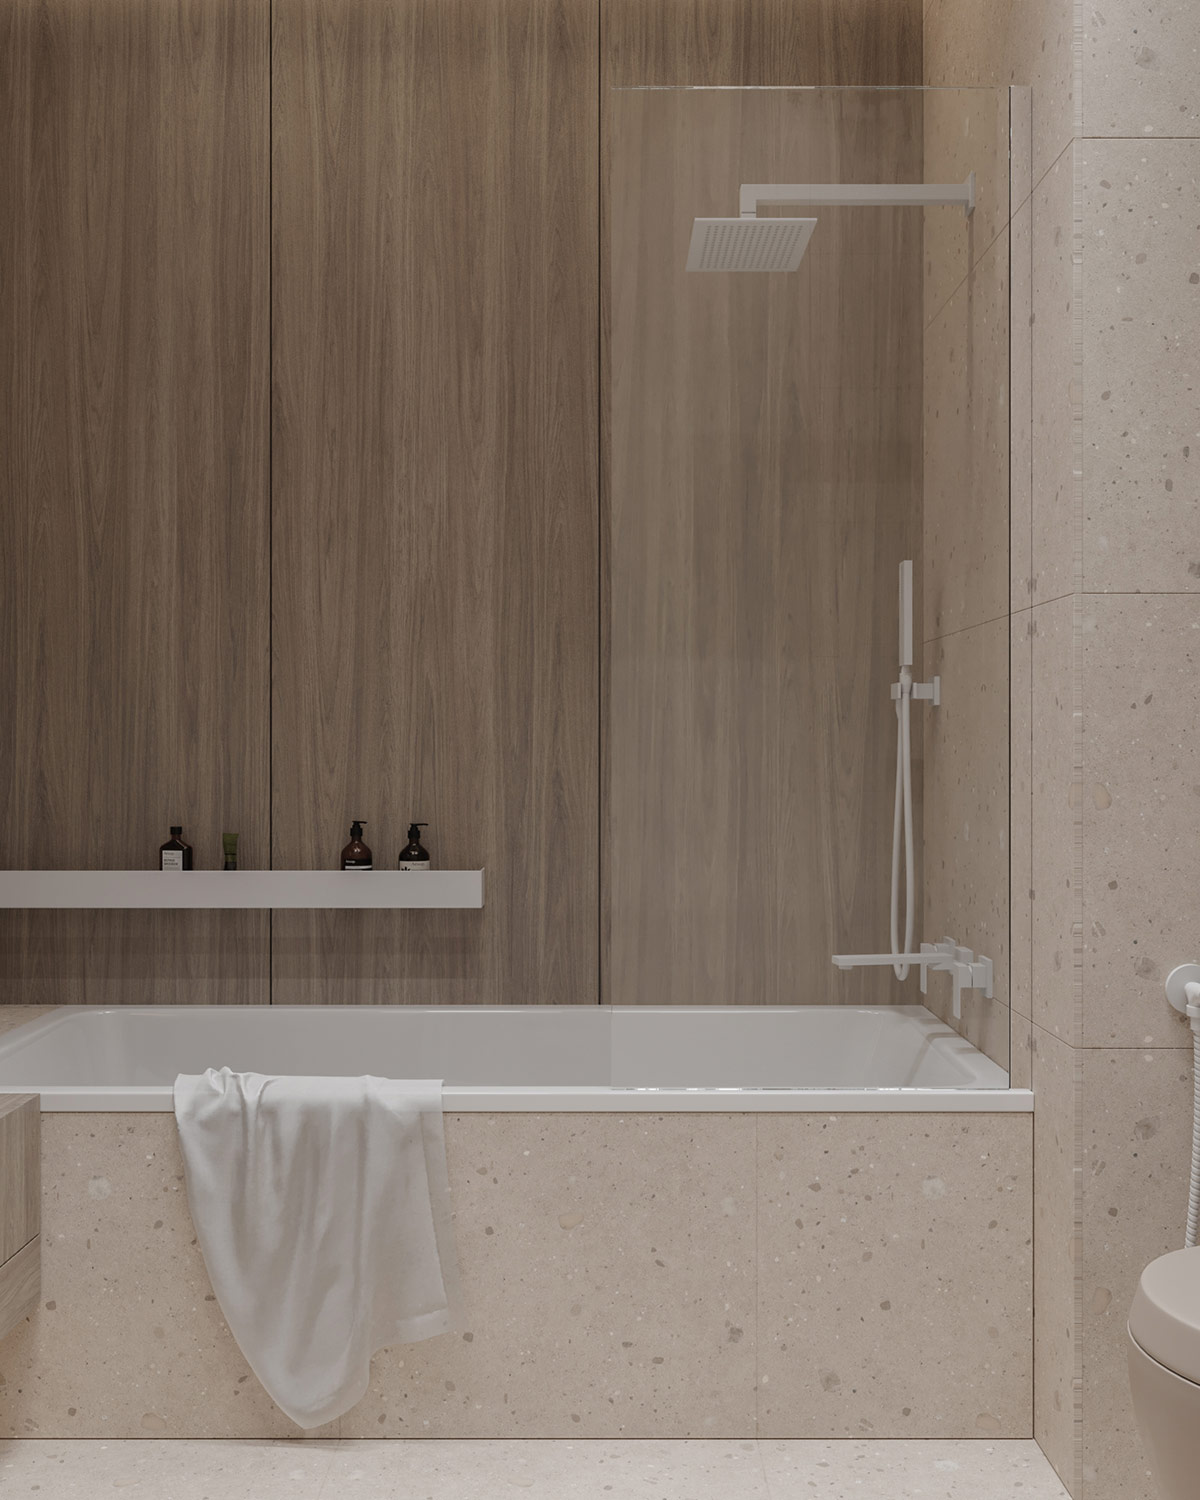 Bồn tắm phân vùng với nhà vệ sinh bằng tấm kính trong suốt, các vật liệu gỗ, đá gam màu trung tính cùng nội thất tối giản tạo nên vẻ đẹp tinh tế, yên bình cho phòng tắm.